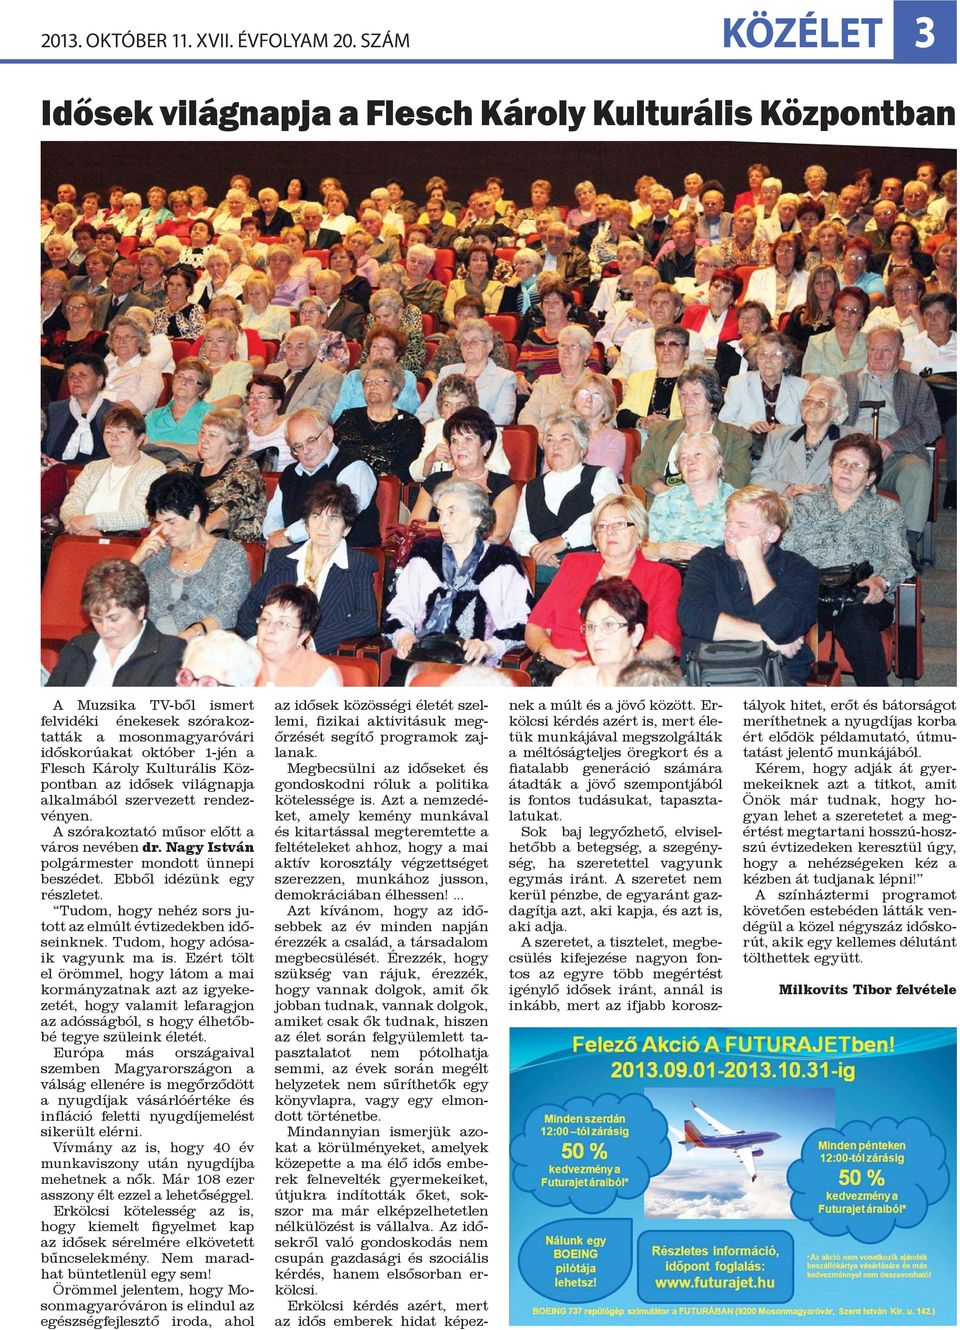 Kulturális Központban az idősek világnapja alkalmából szervezett rendezvényen. A szórakoztató műsor előtt a város nevében dr. Nagy István polgármester mondott ünnepi beszédet.